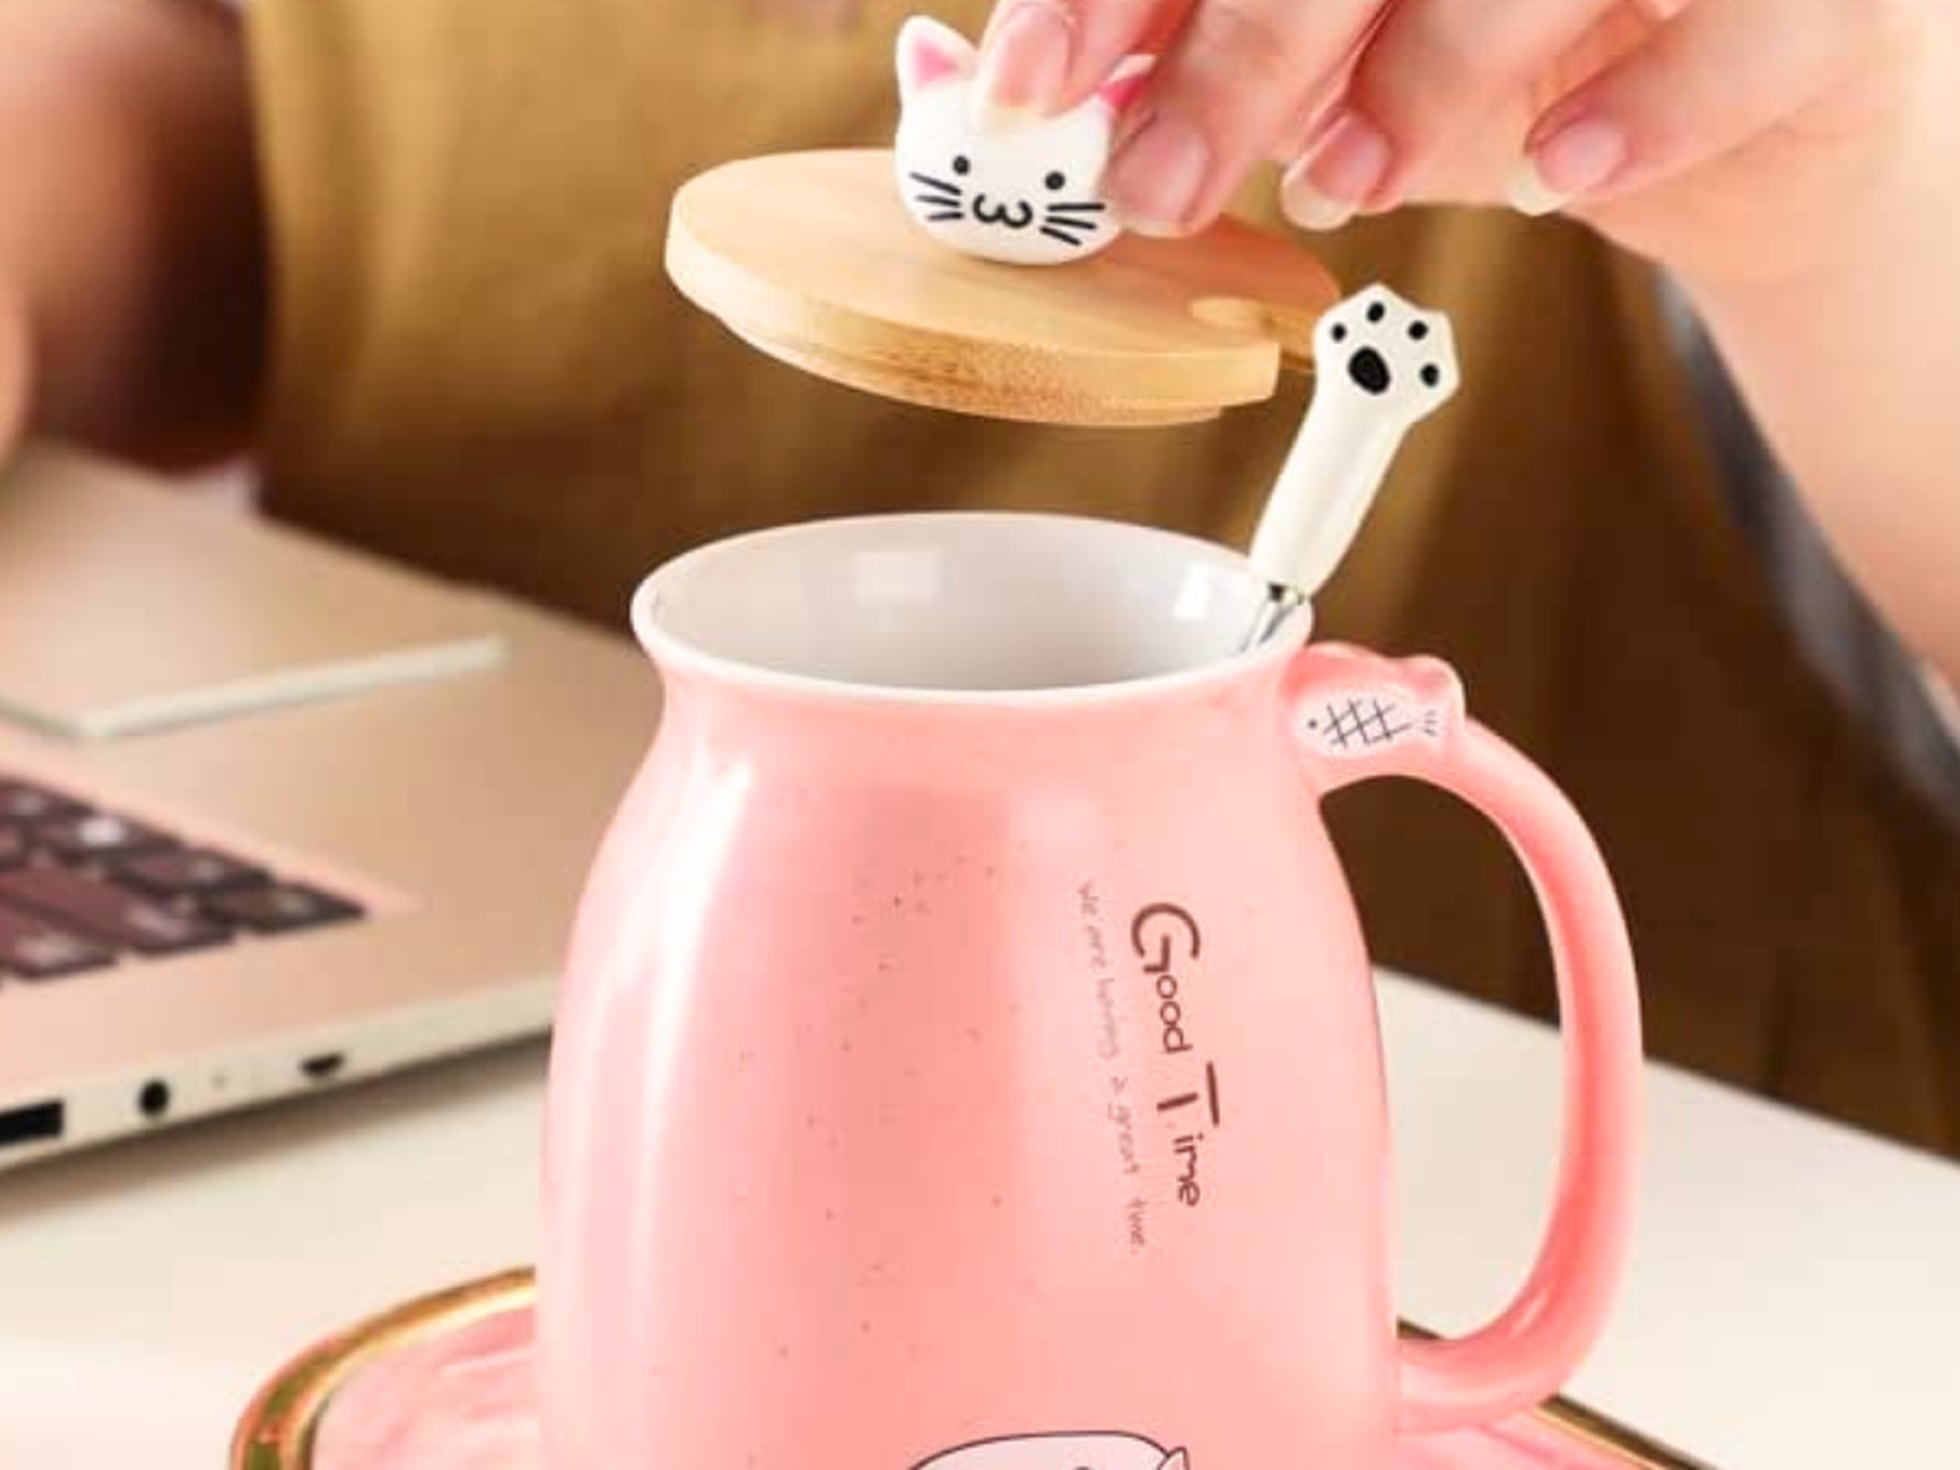 Taza / Mug para té - Compra Online todos los accesorios para hacer té